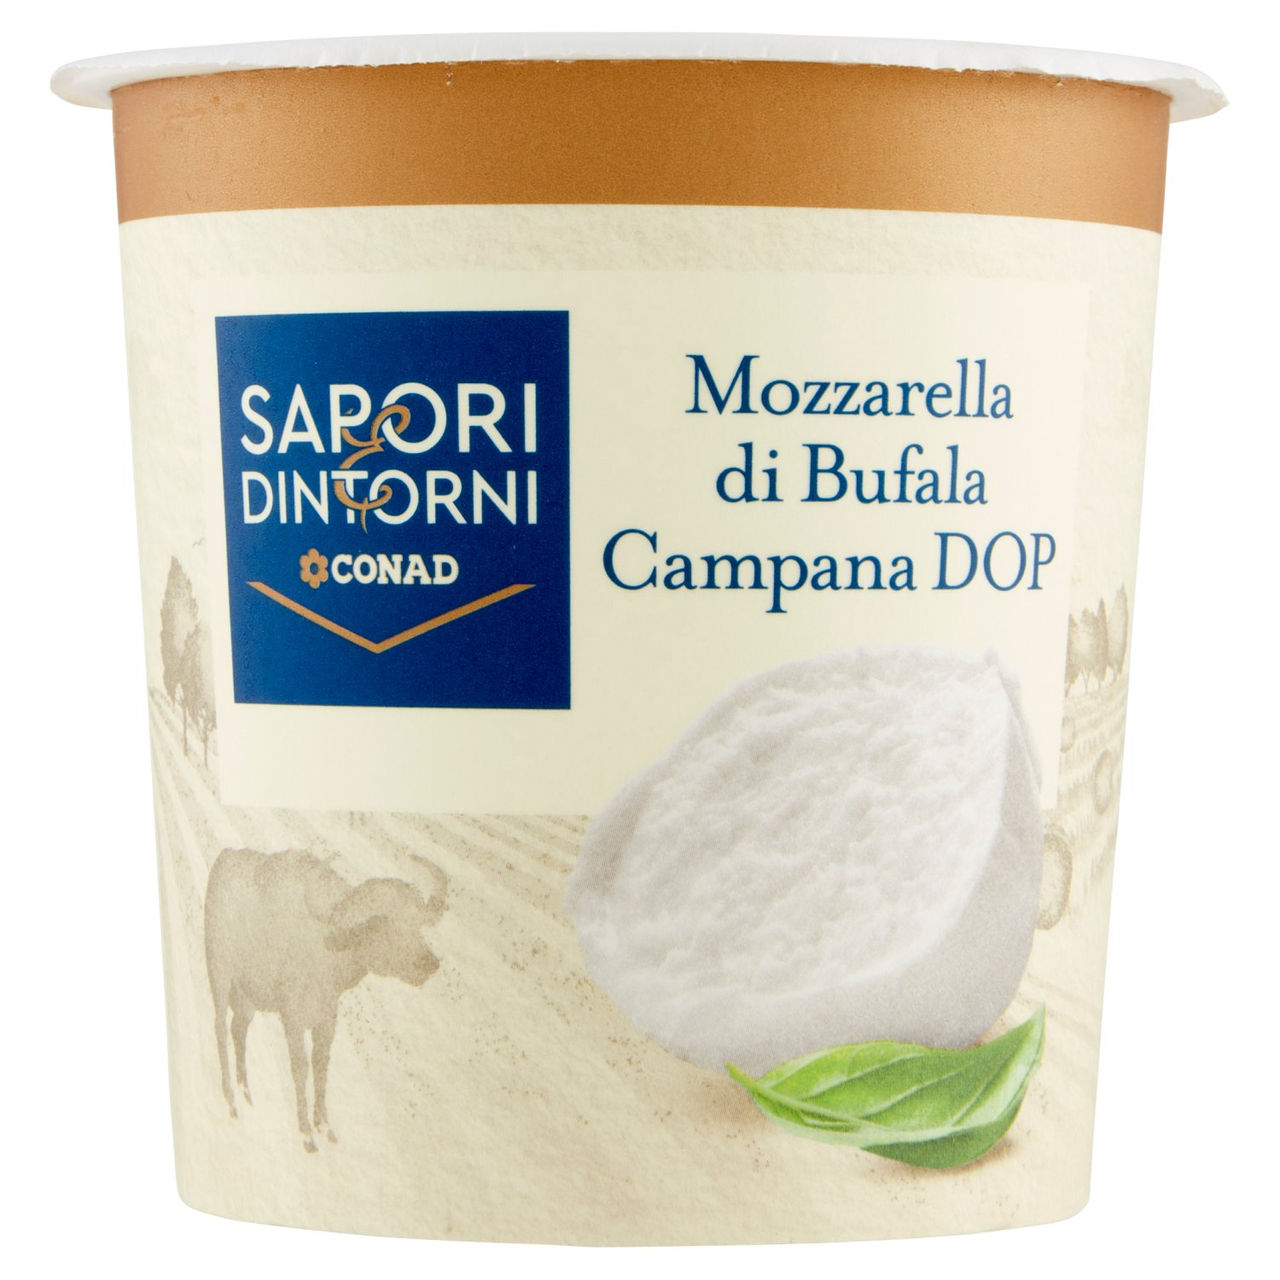 Mozzarella di Bufala Campana DOP 200 g Conad